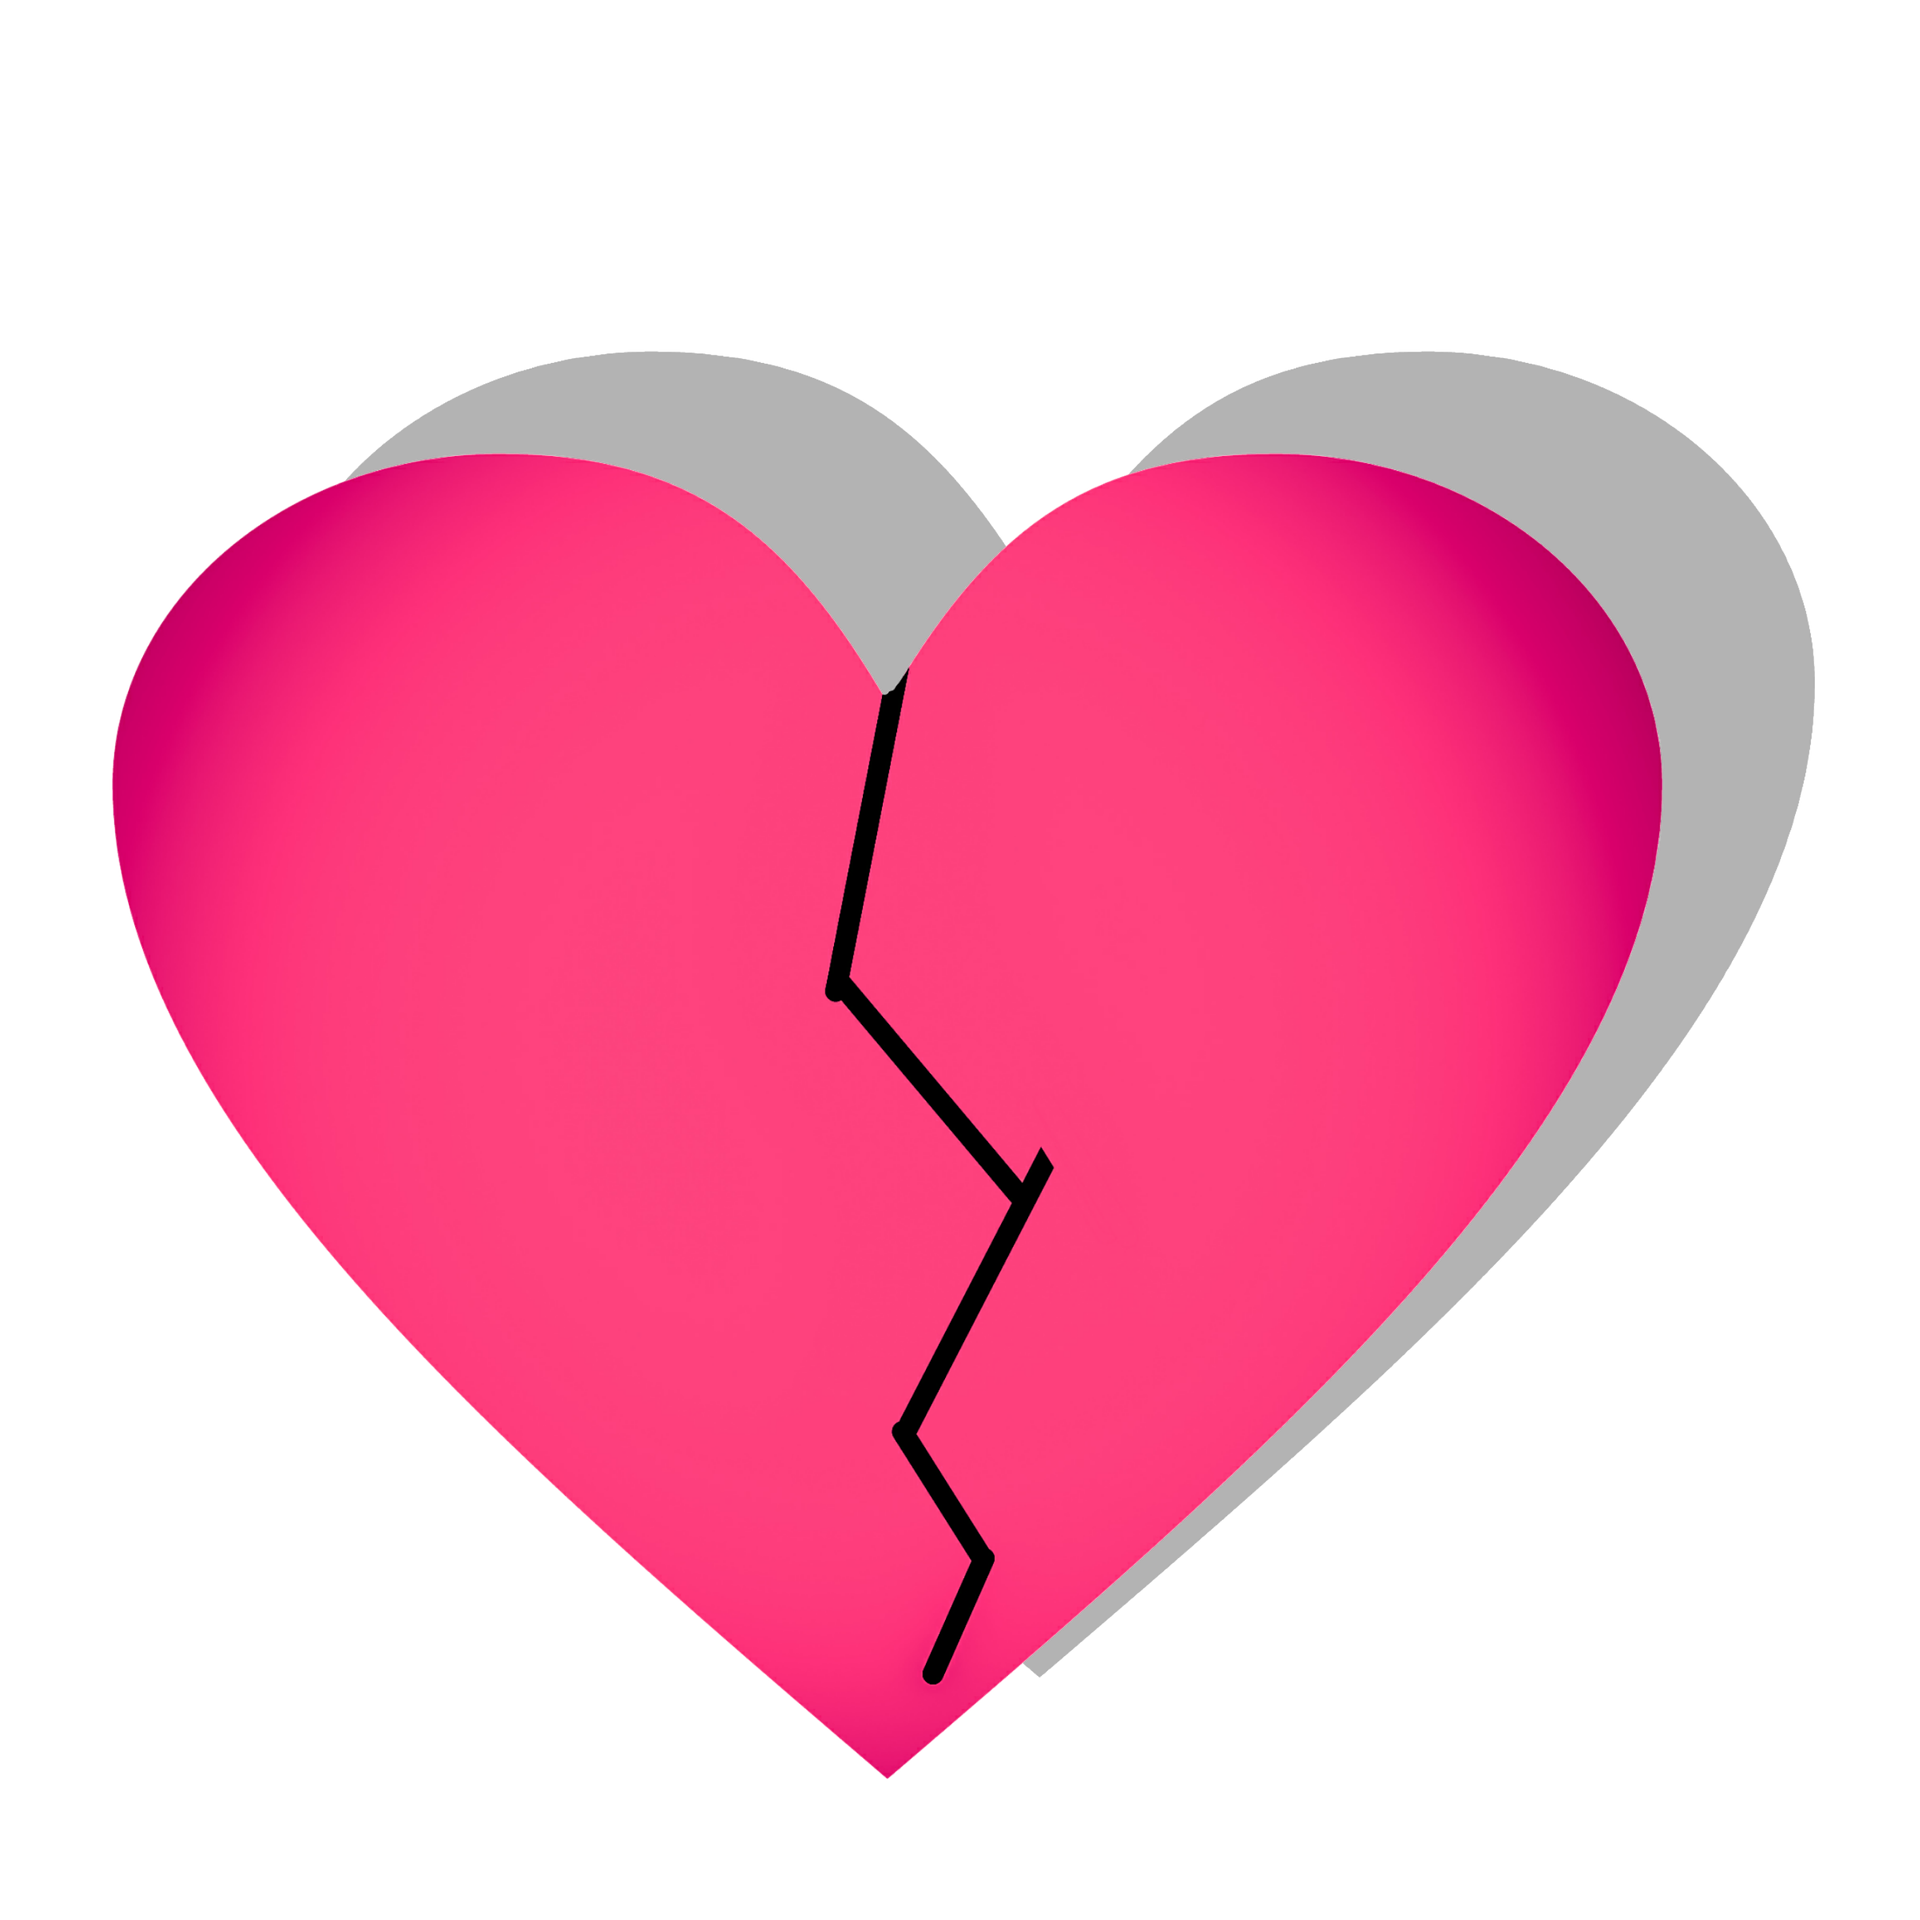 slomljeno-srce-pixabay.png